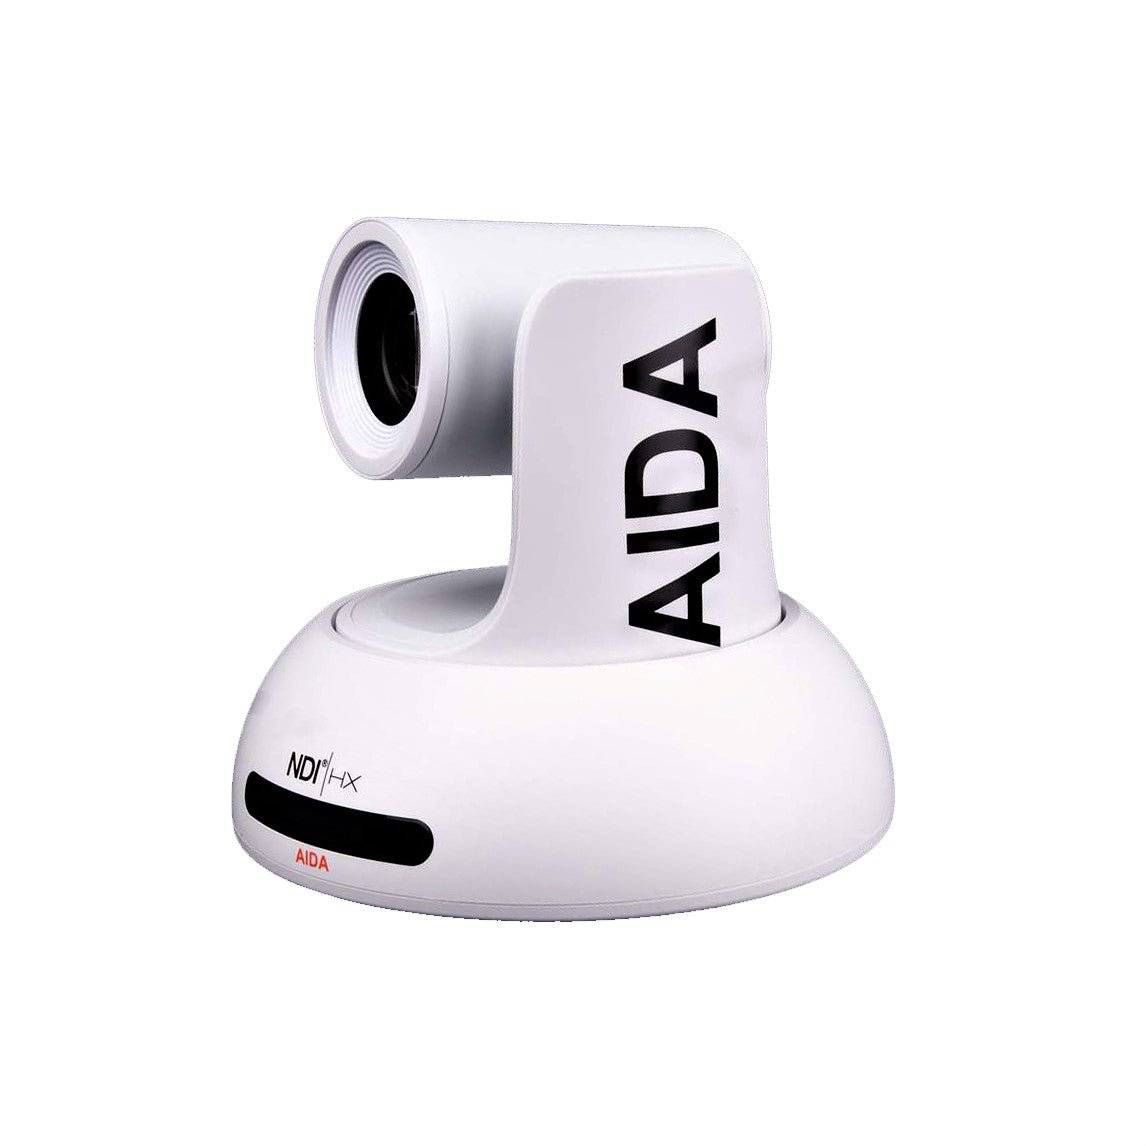 AIDA Imaging Broadcast/Conference NDI®|HX FHD NDI/IP/HDMI 18X Zoom PTZ Camera (White)